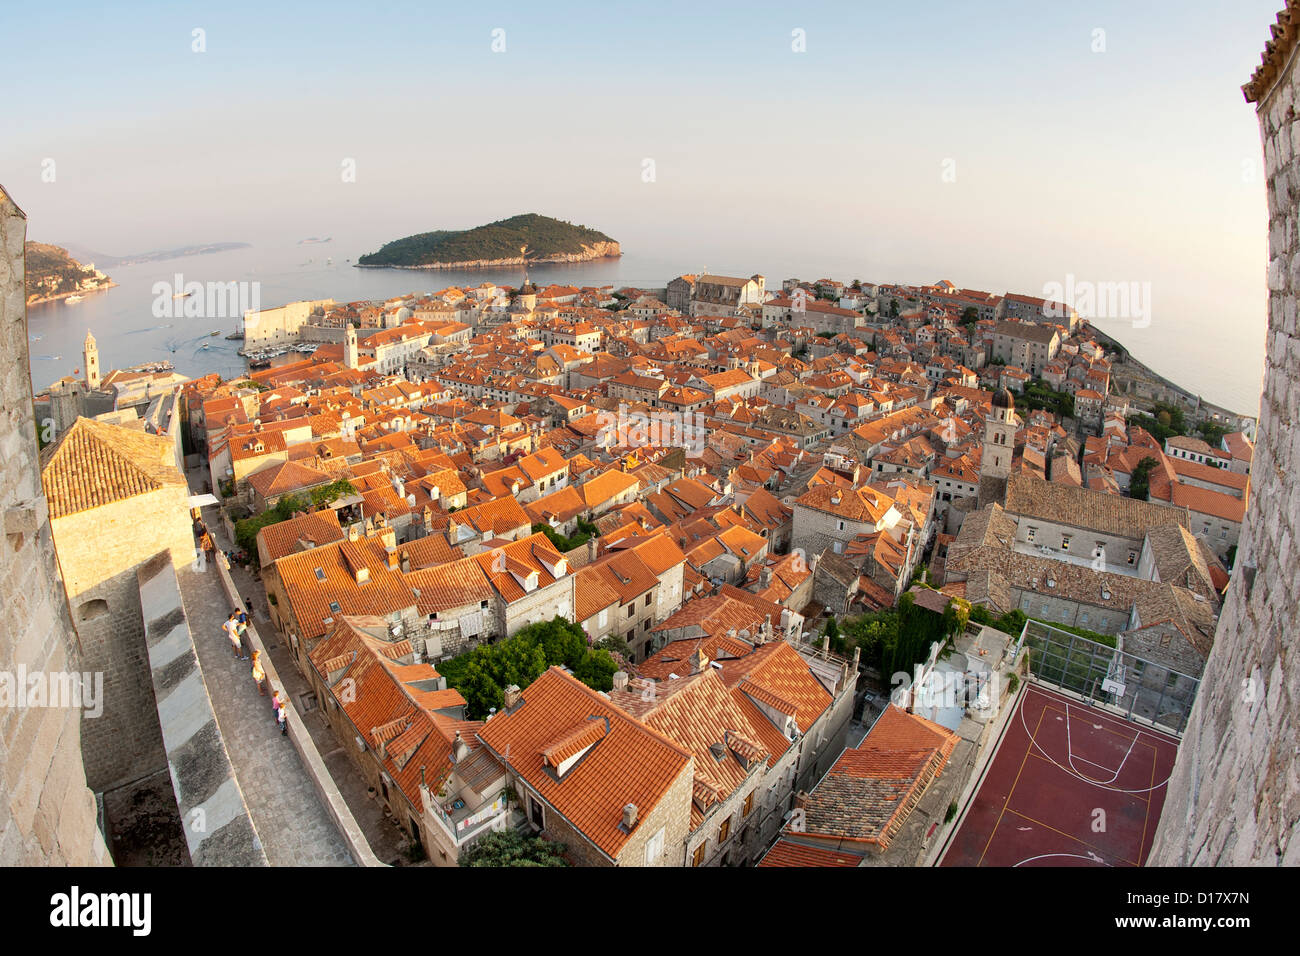 Vue sur les toits de la vieille ville dans la ville de Dubrovnik, sur la côte Adriatique de Croatie. Aussi visible est l'île de Lokrum. Banque D'Images